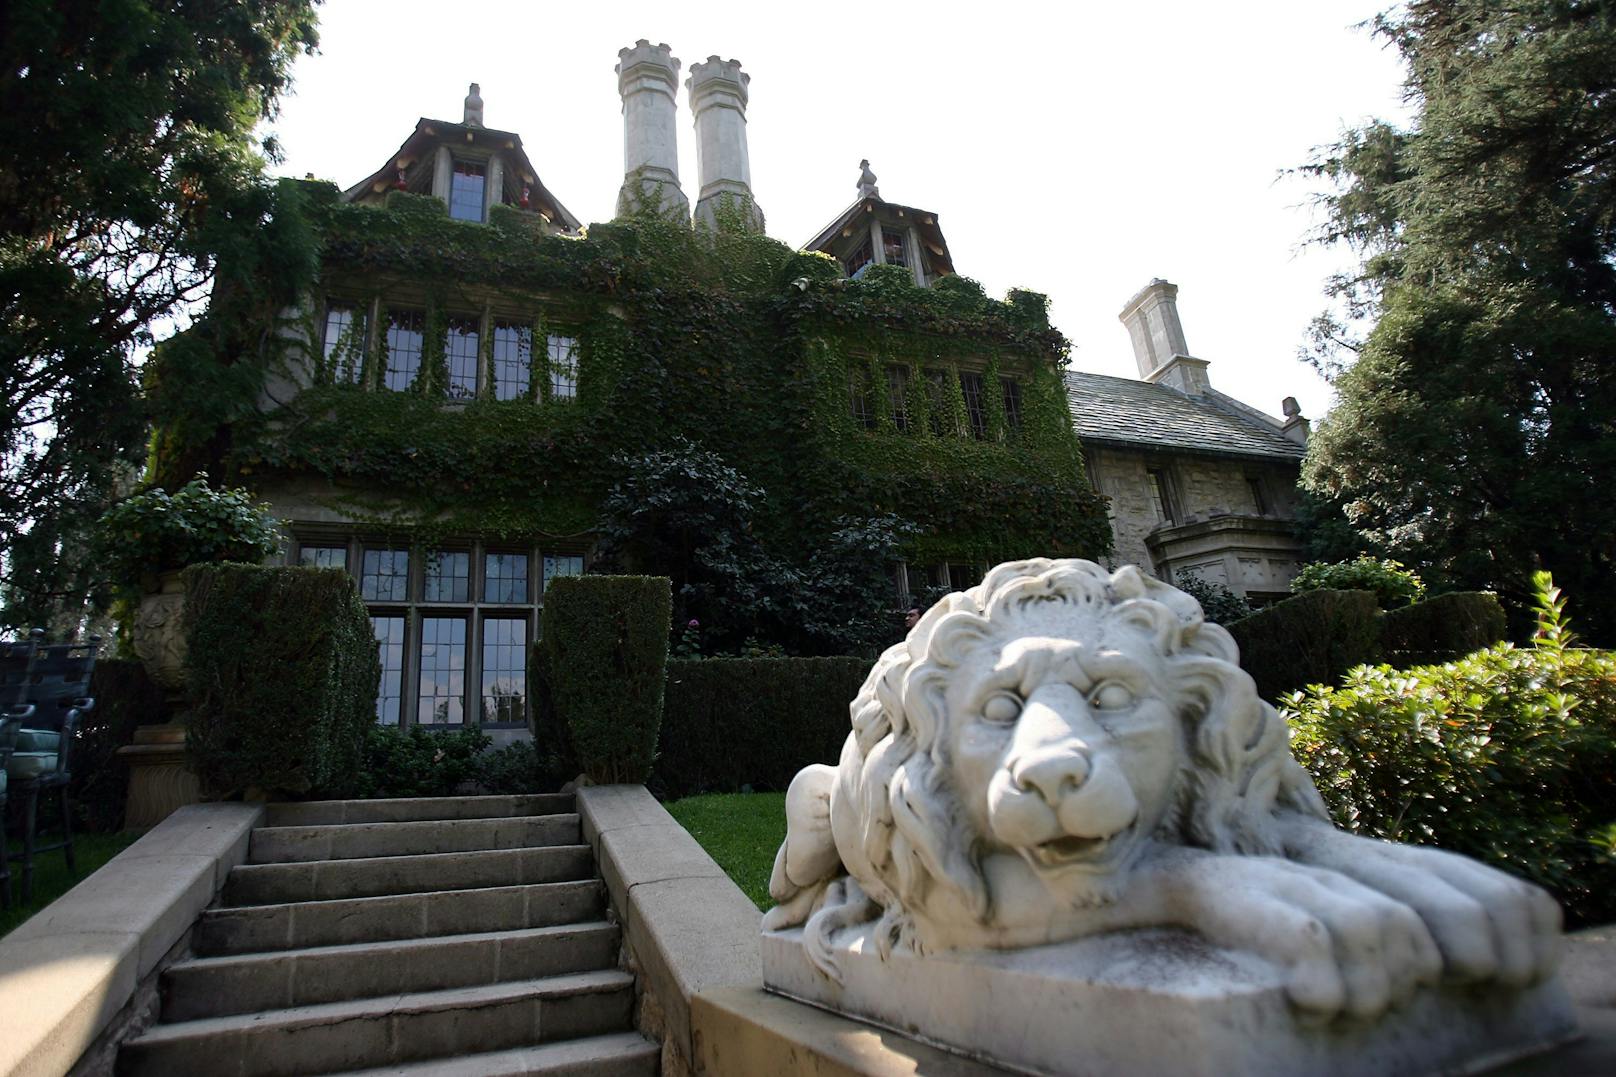 In die Villa von Hugh Hefner durfte sie allerdings nie einziehen und musste sich an eine strenge Hausordnung halten.